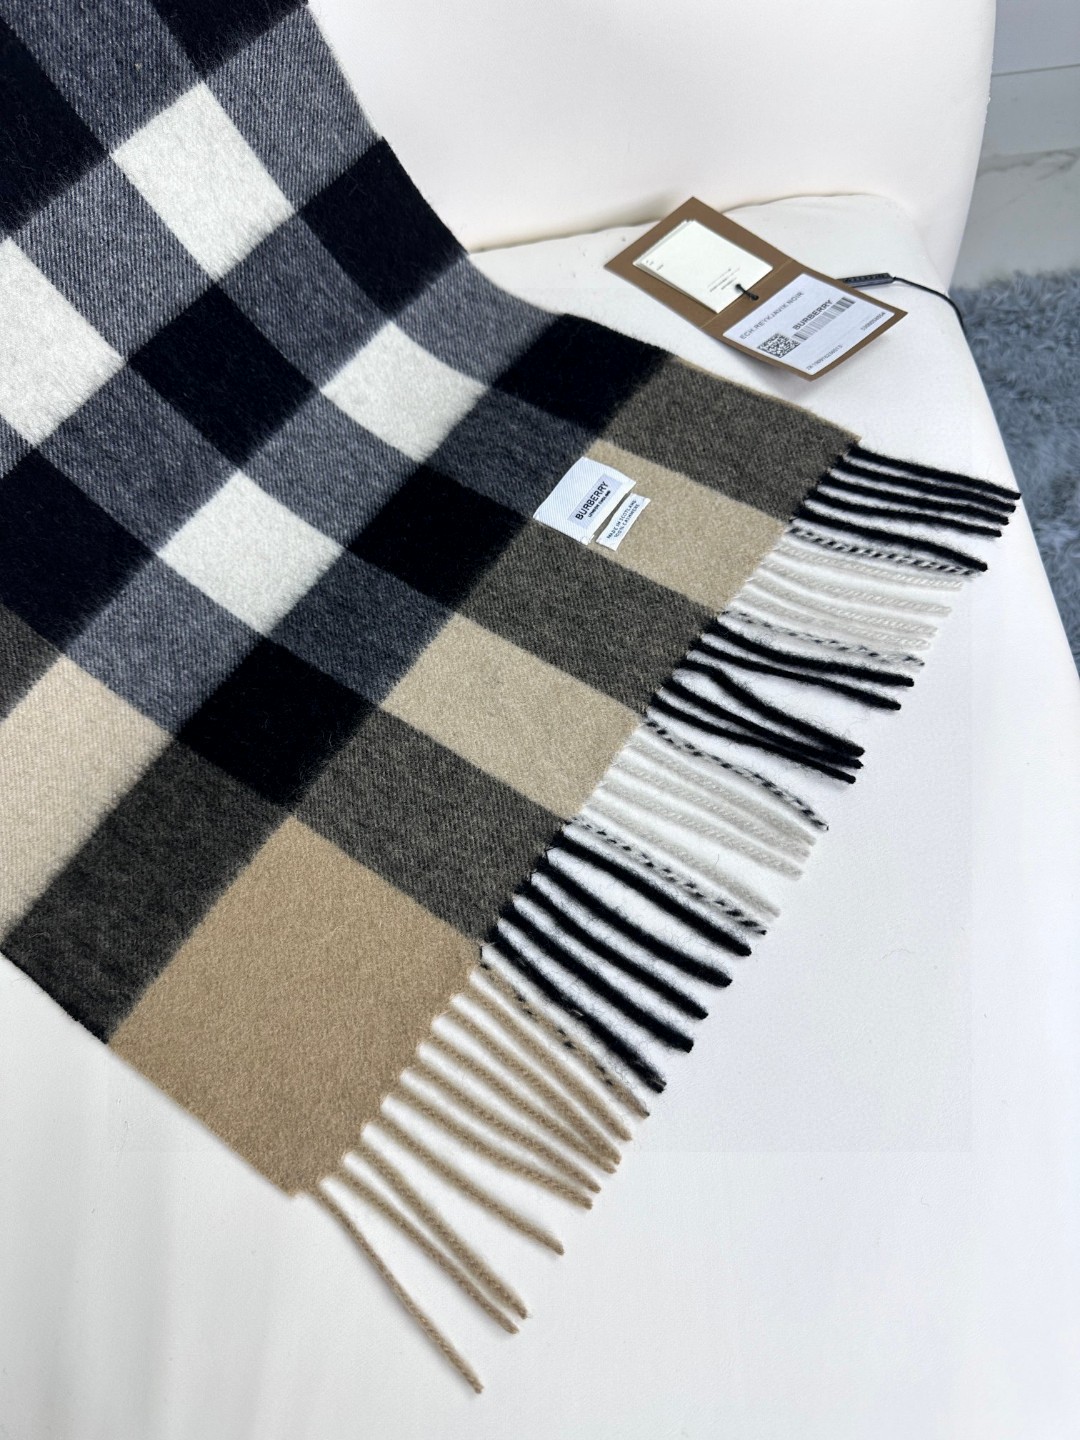 王牌口碑burberry深度经典羊绒格子围巾️专柜最新品相目前专柜都换上了新标经典中的经典.全品相️其他